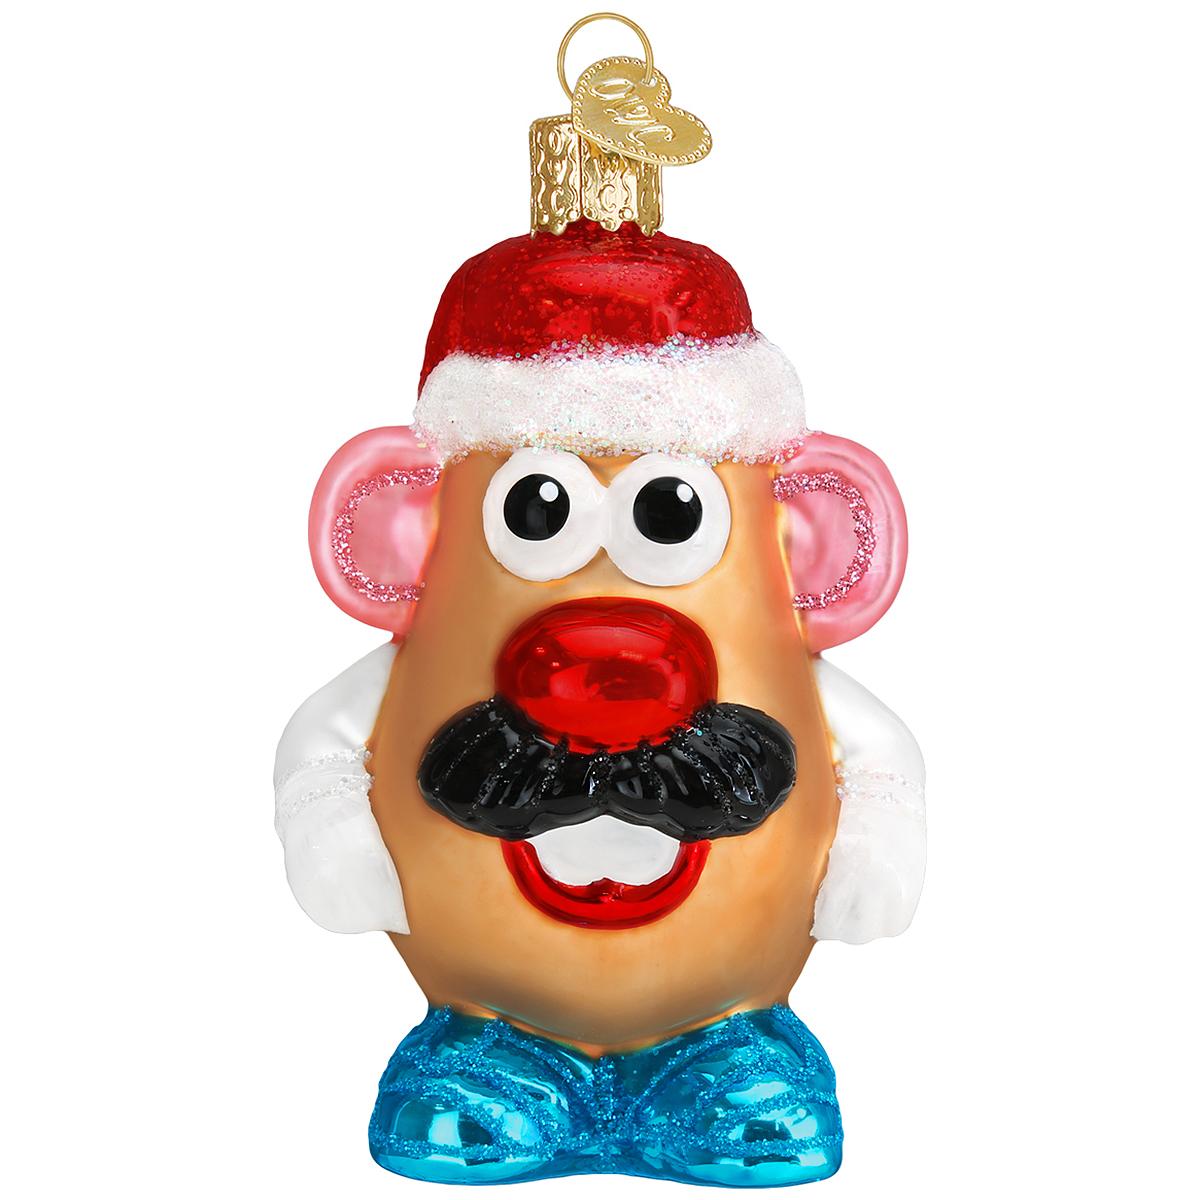 Mr. Potato Head Glass Ornament